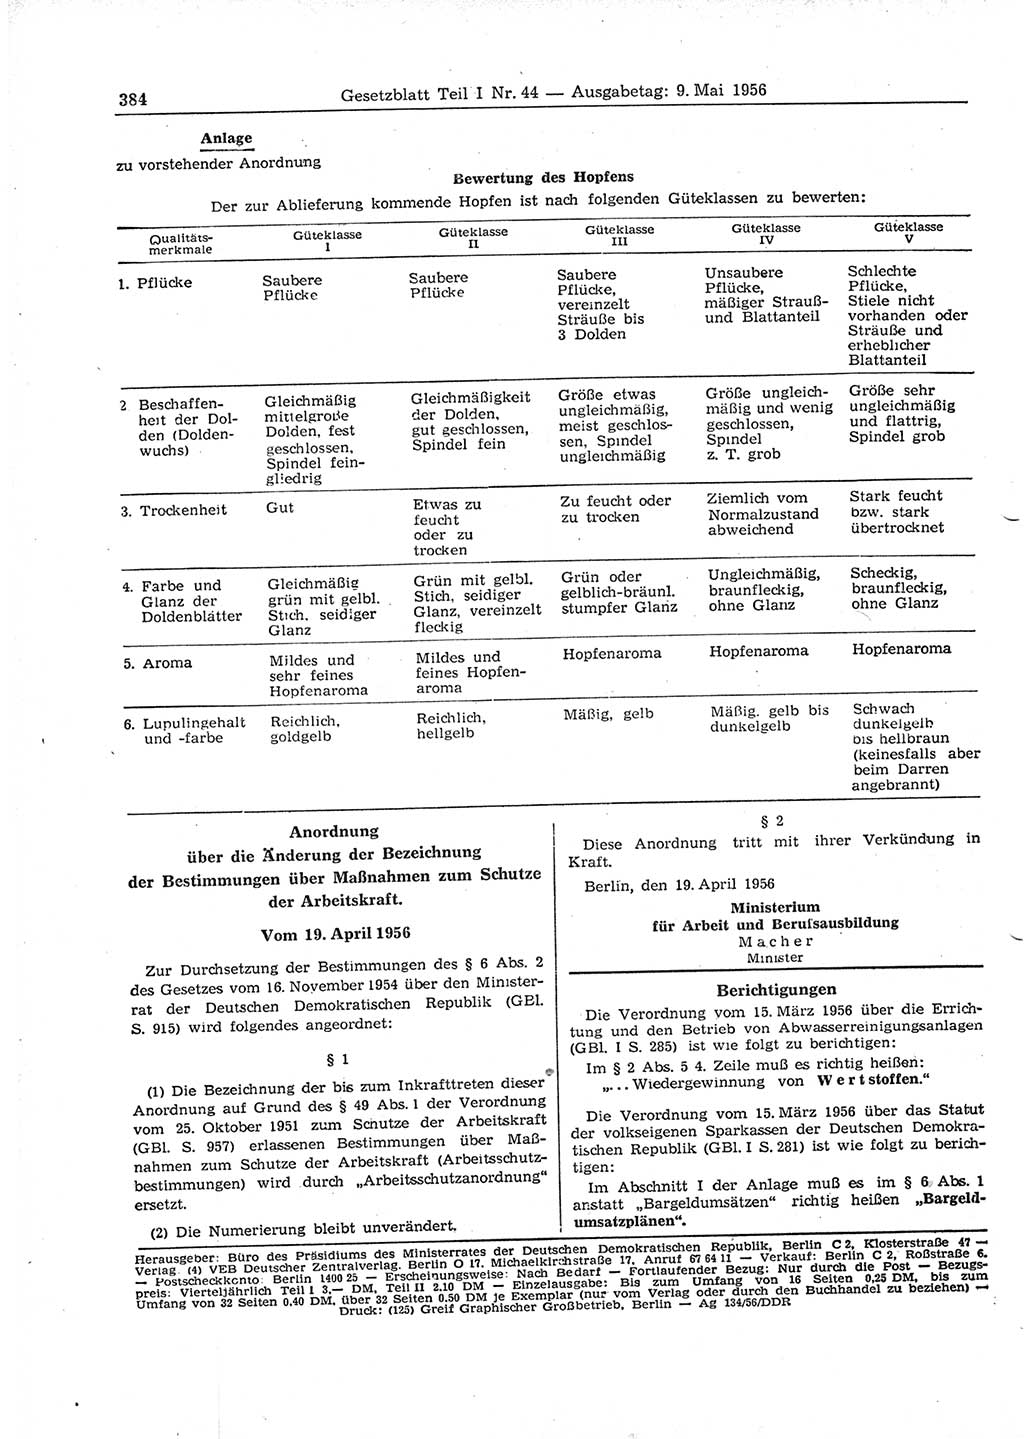 Gesetzblatt (GBl.) der Deutschen Demokratischen Republik (DDR) Teil Ⅰ 1956, Seite 384 (GBl. DDR Ⅰ 1956, S. 384)